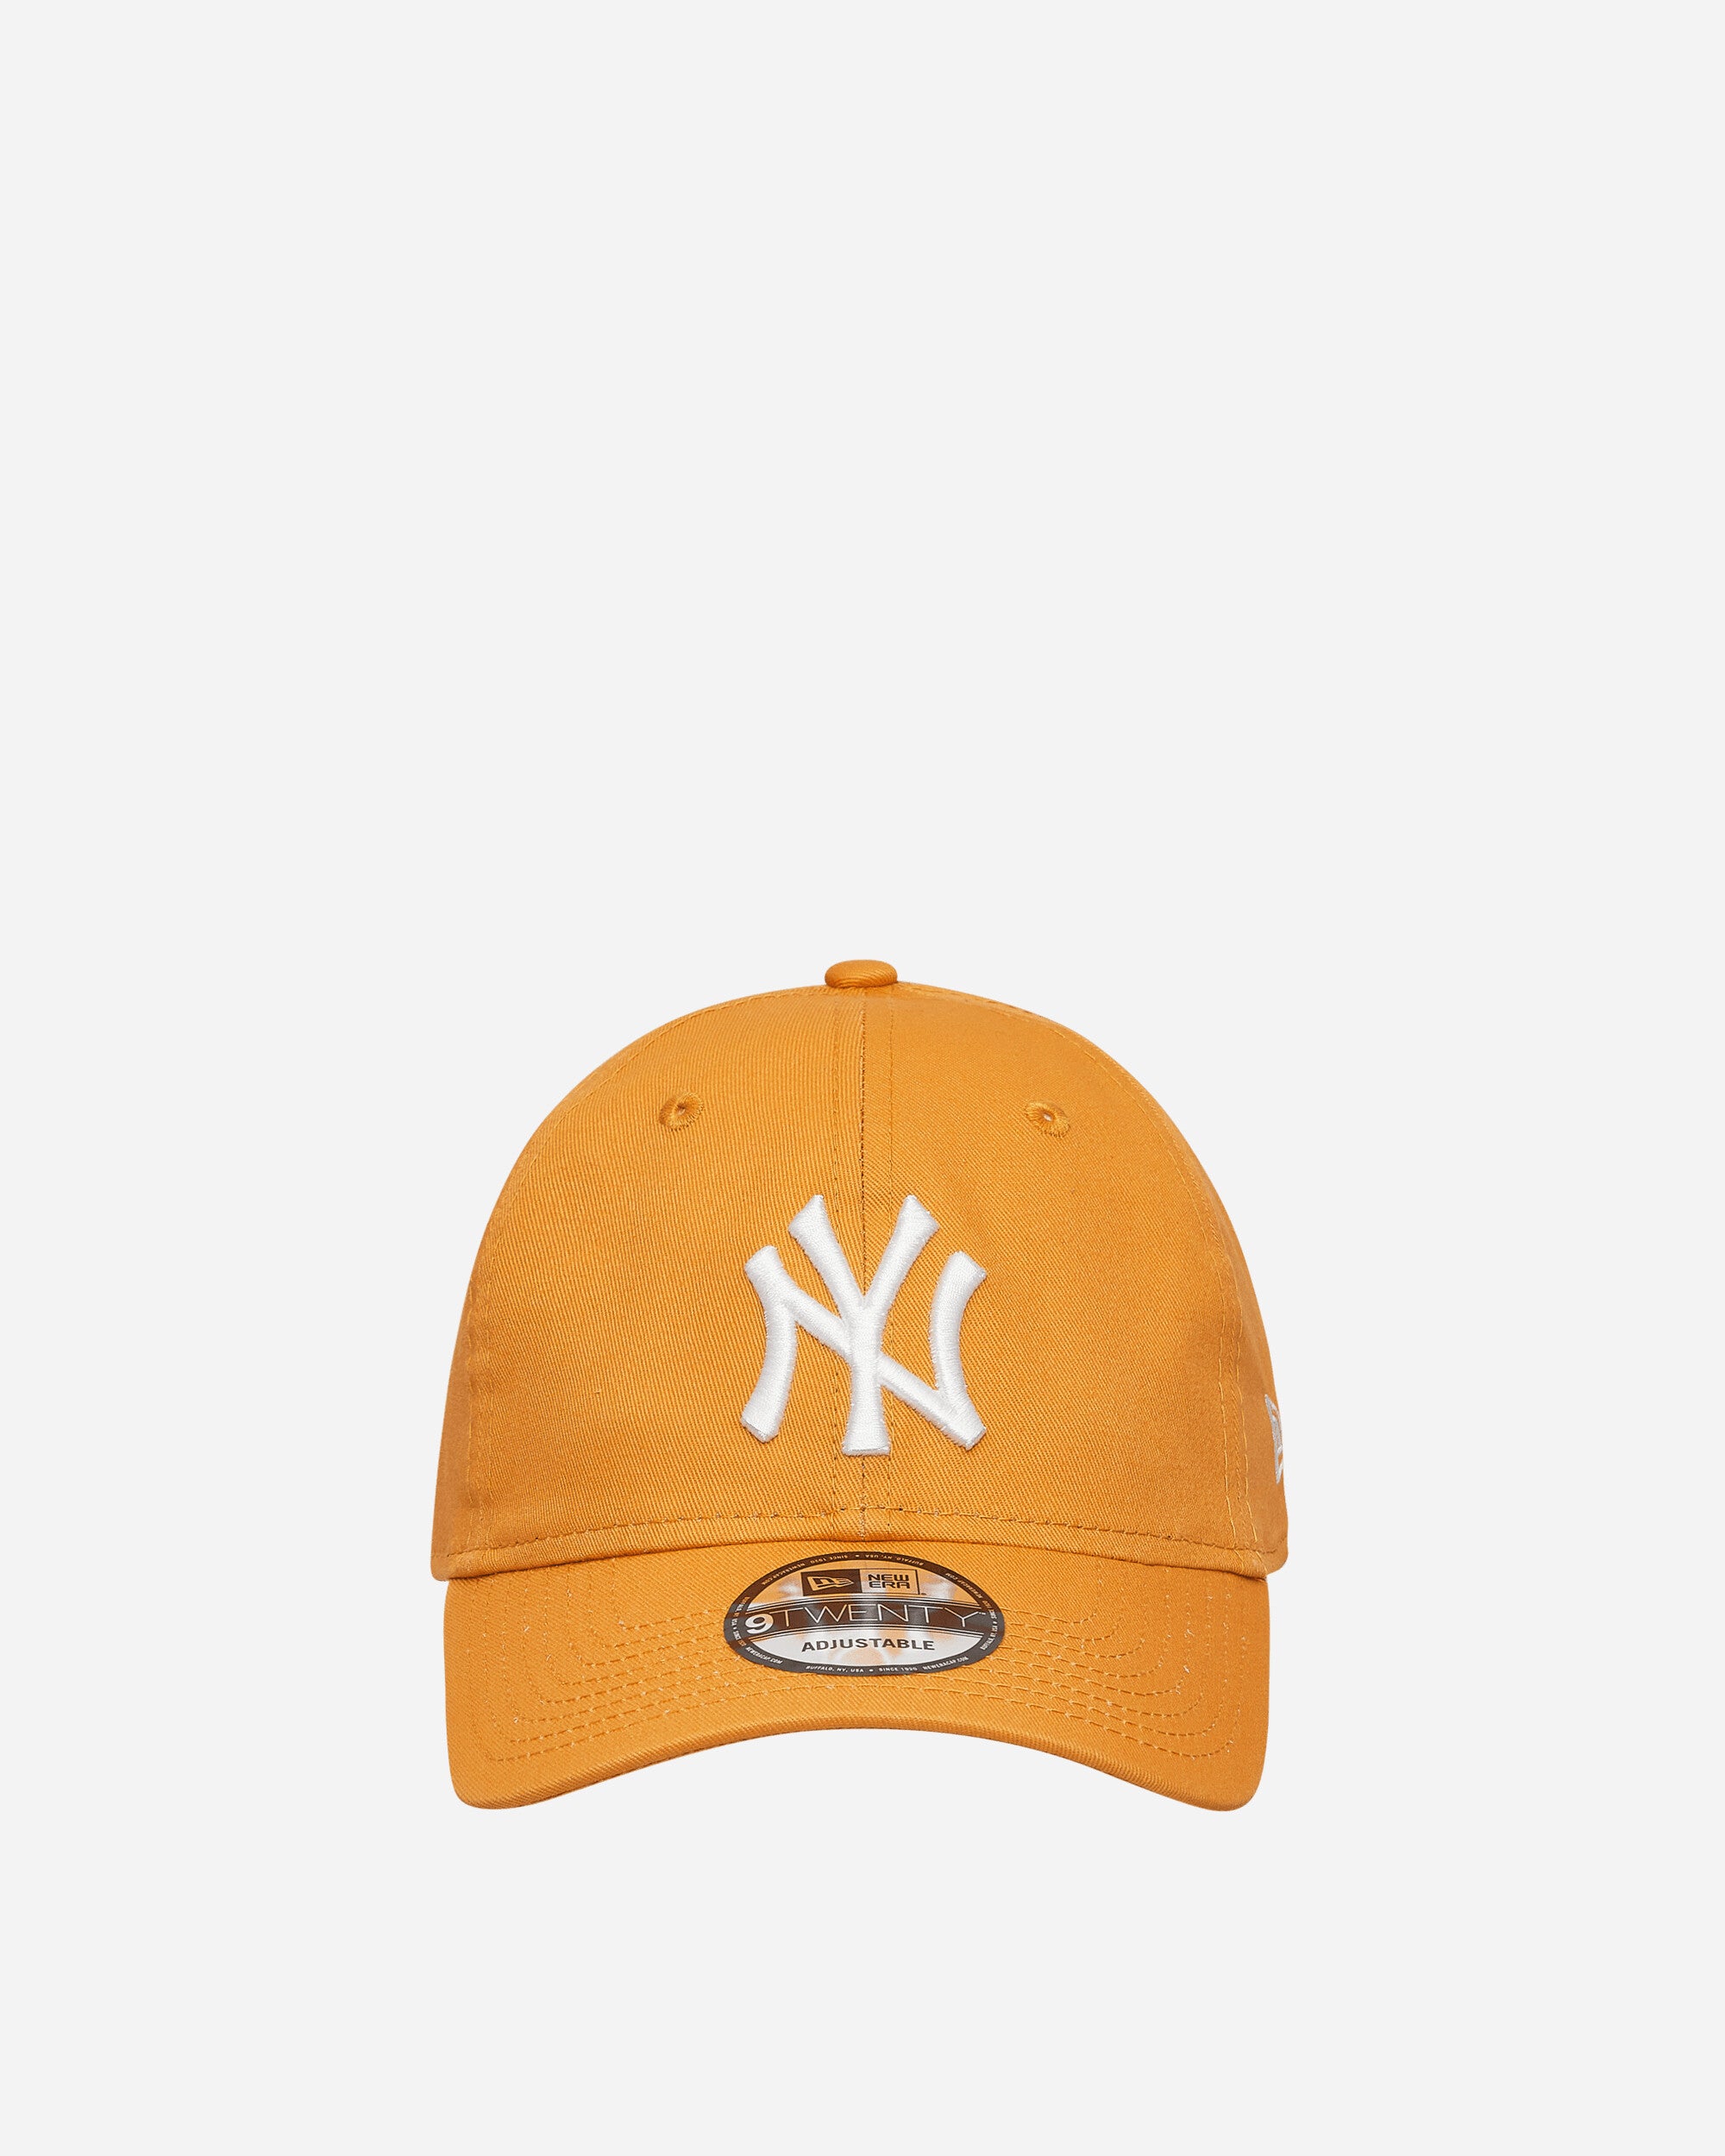 Dankbaar Verwachten of New Era New York Yankees 9FIFTY Cap Orange - Slam Jam Official Store